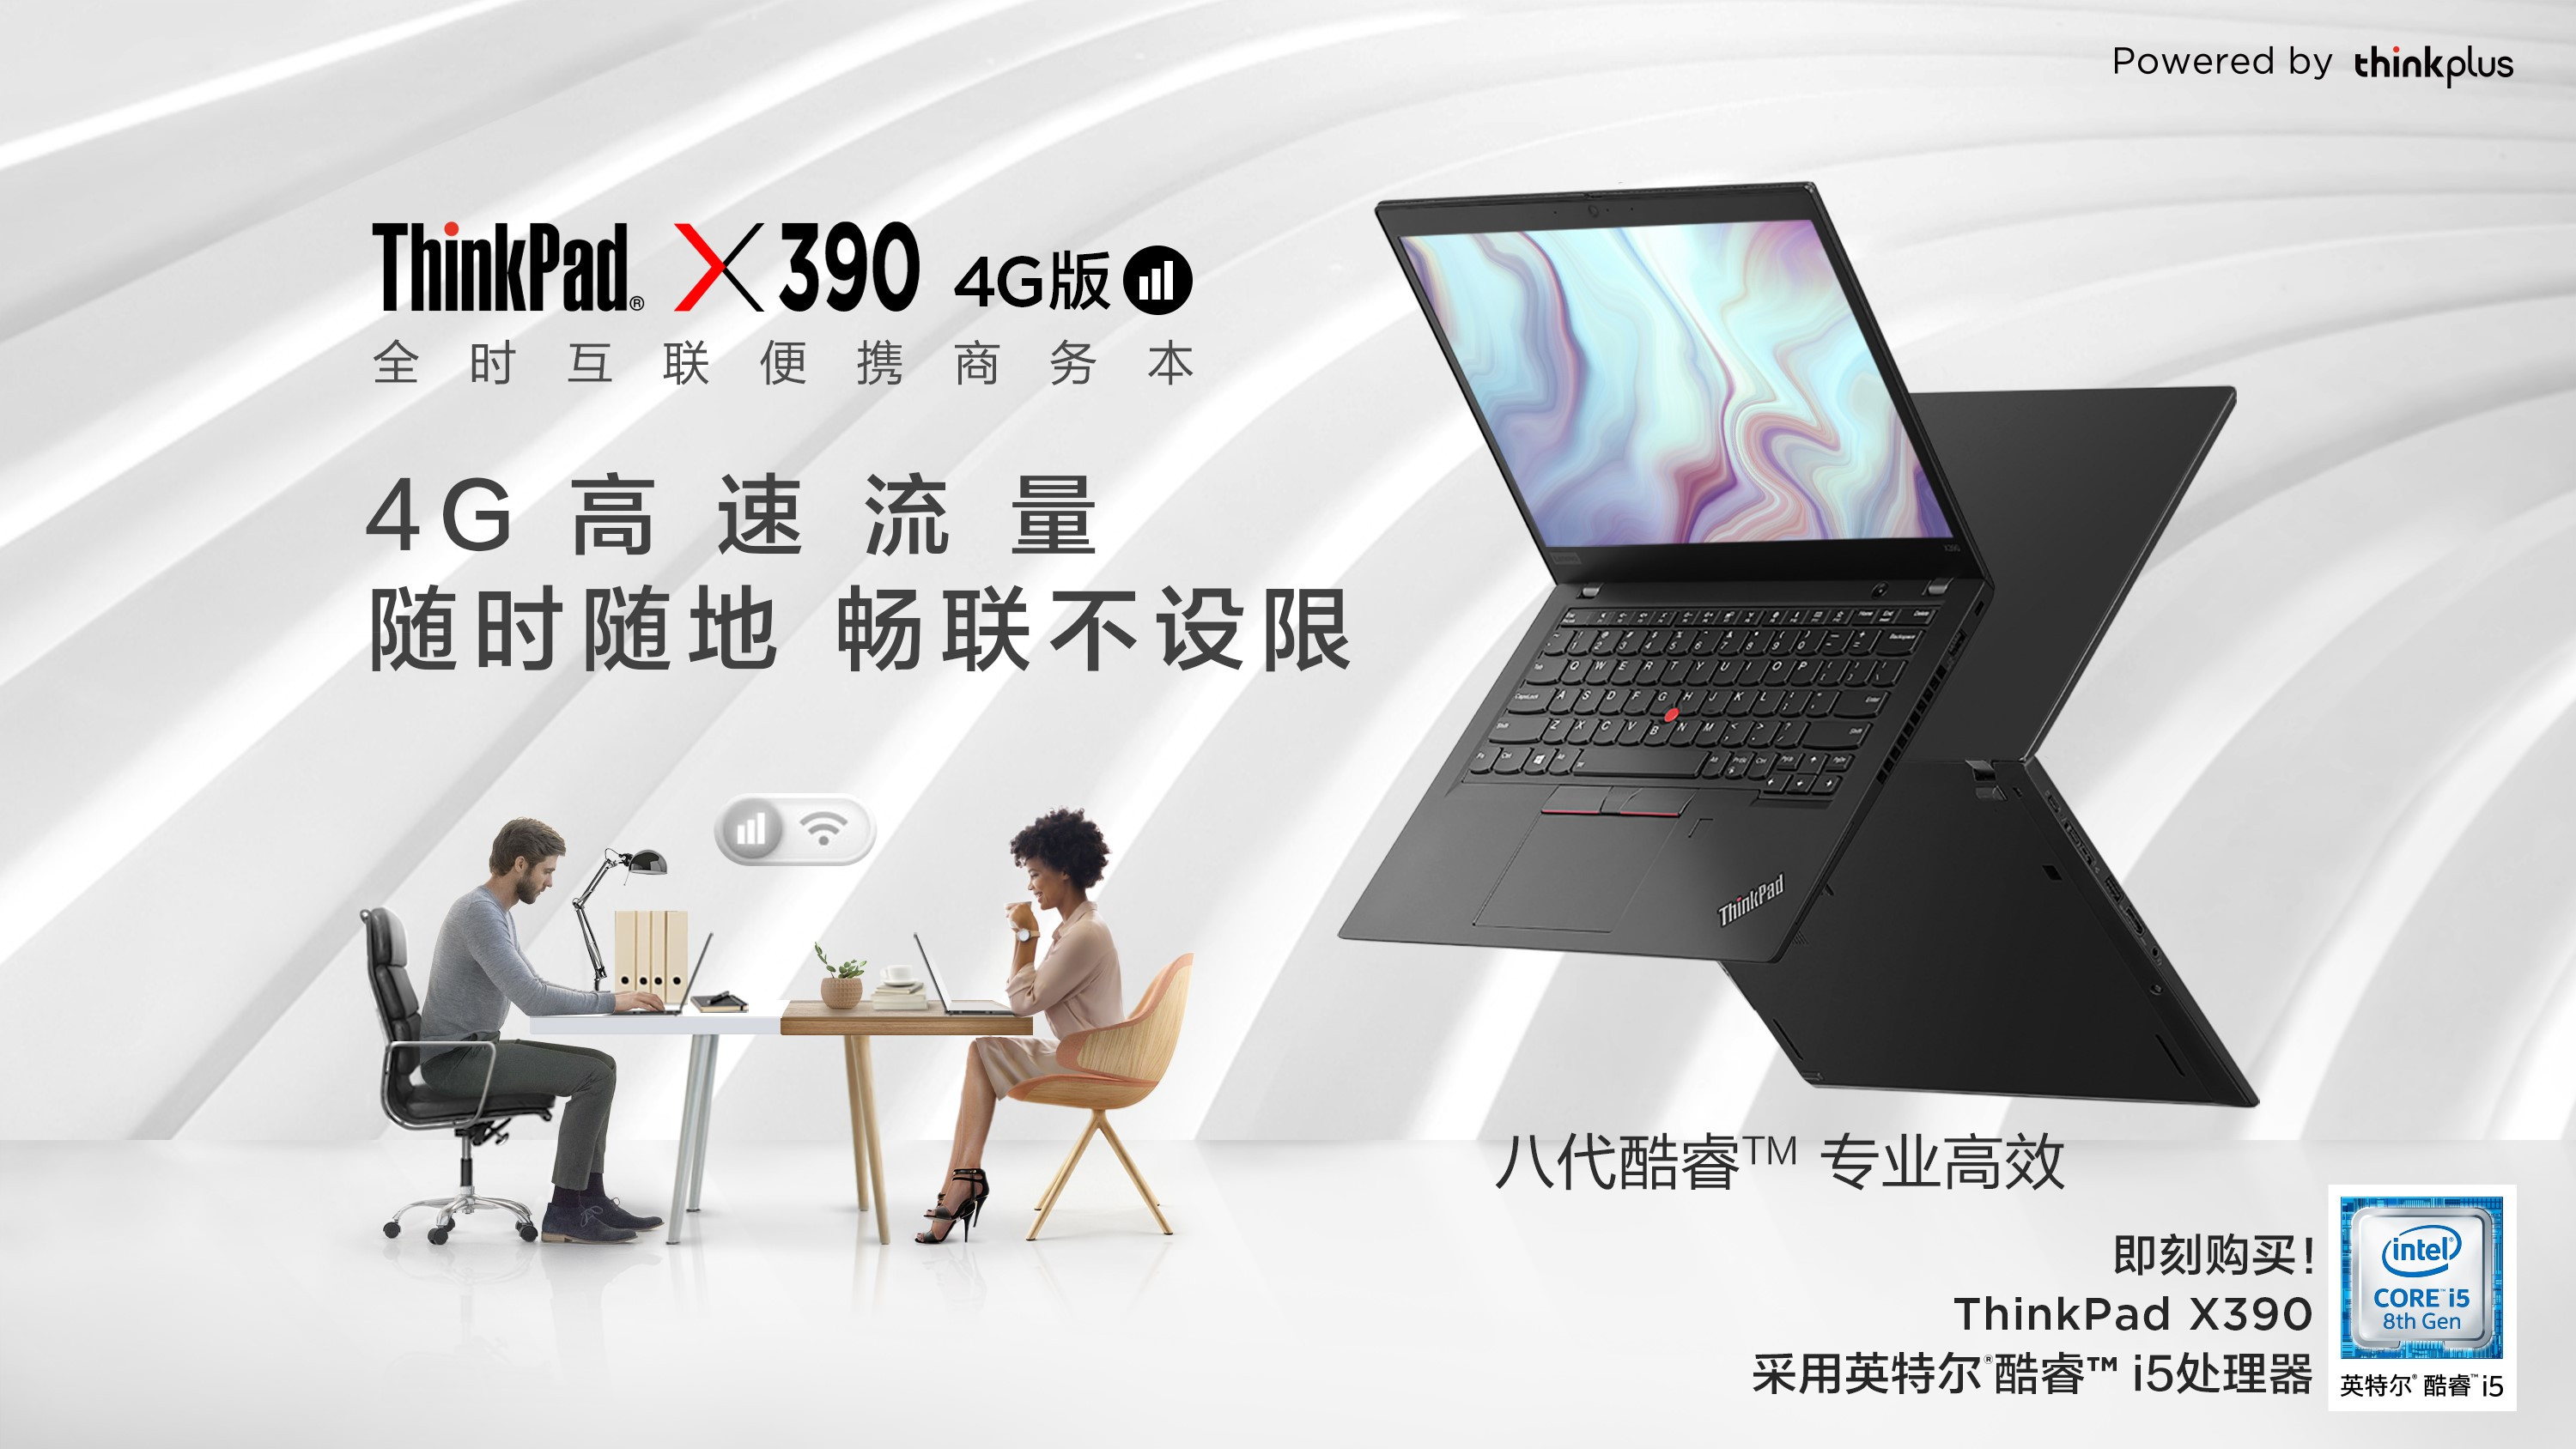 全天互连便携式商务本ThinkPad X390 4g版打开预购